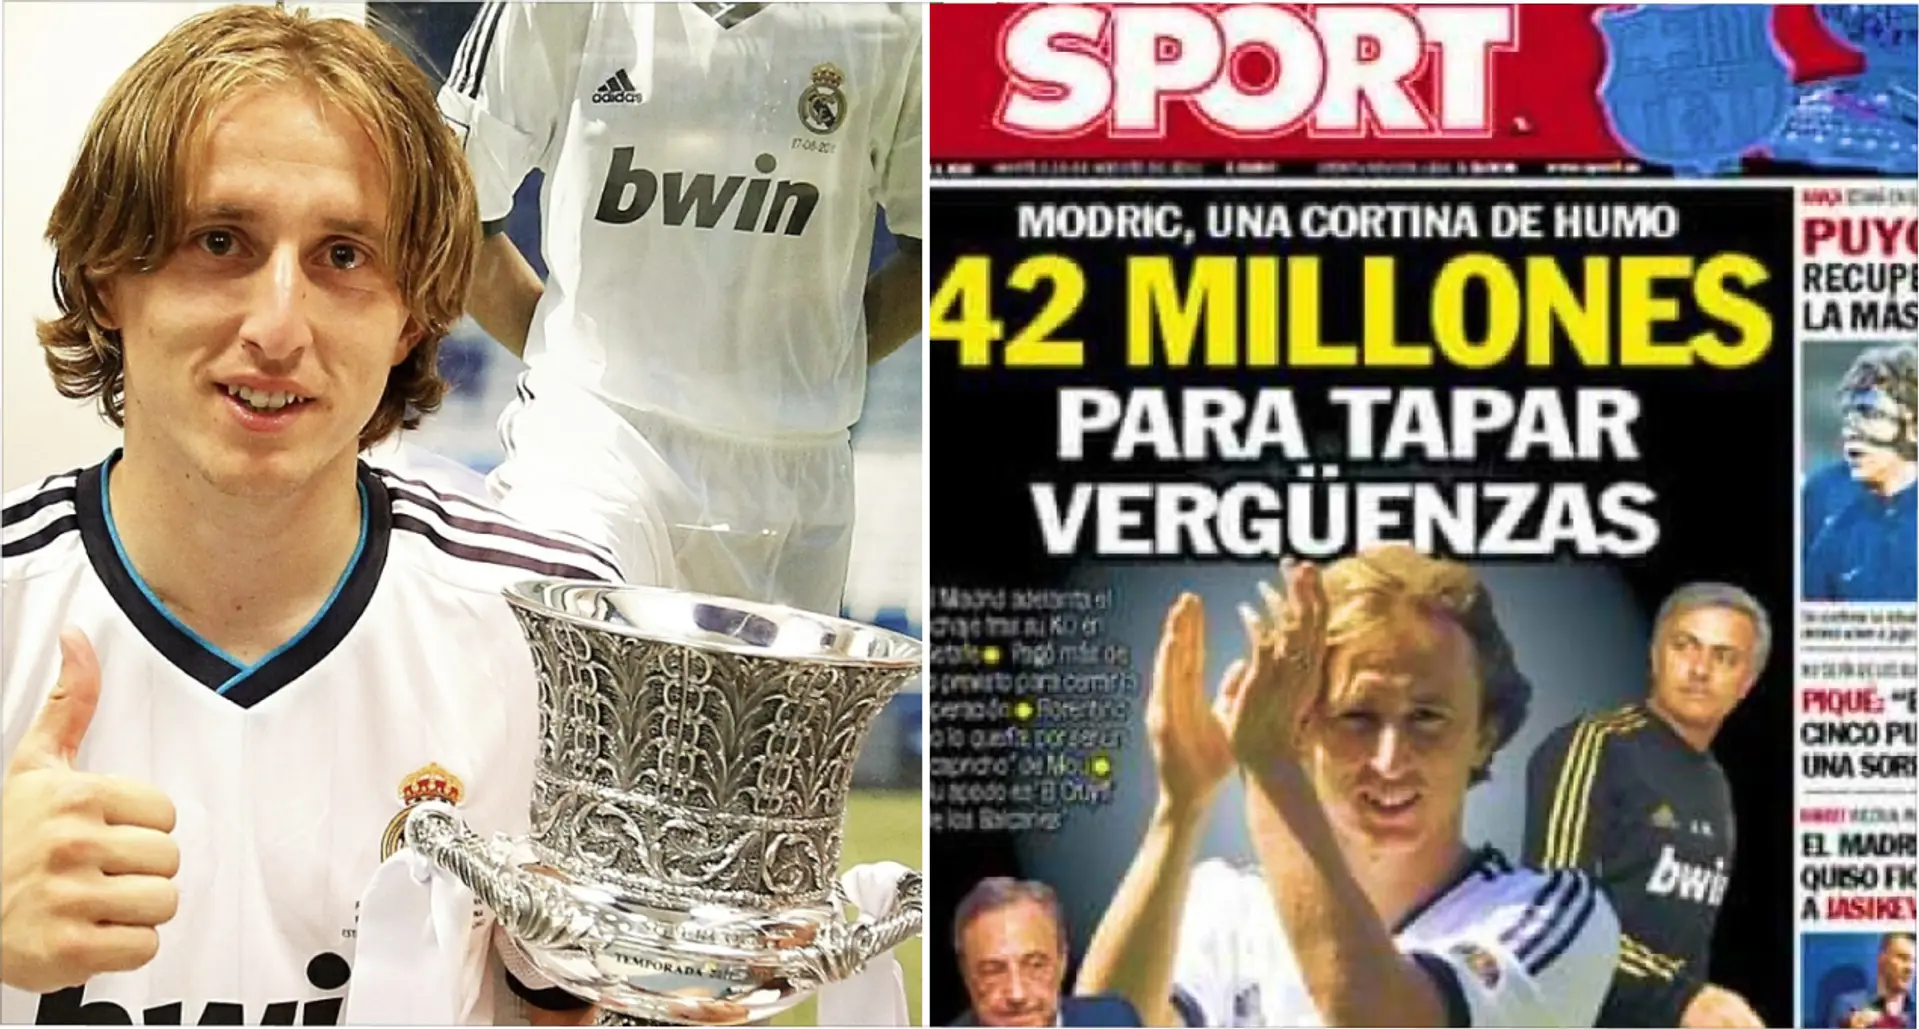 Rappelons ce que disaient les journaux espagnols sur Modric en 2012 - ils n'auraient pas pu avoir plus TORT